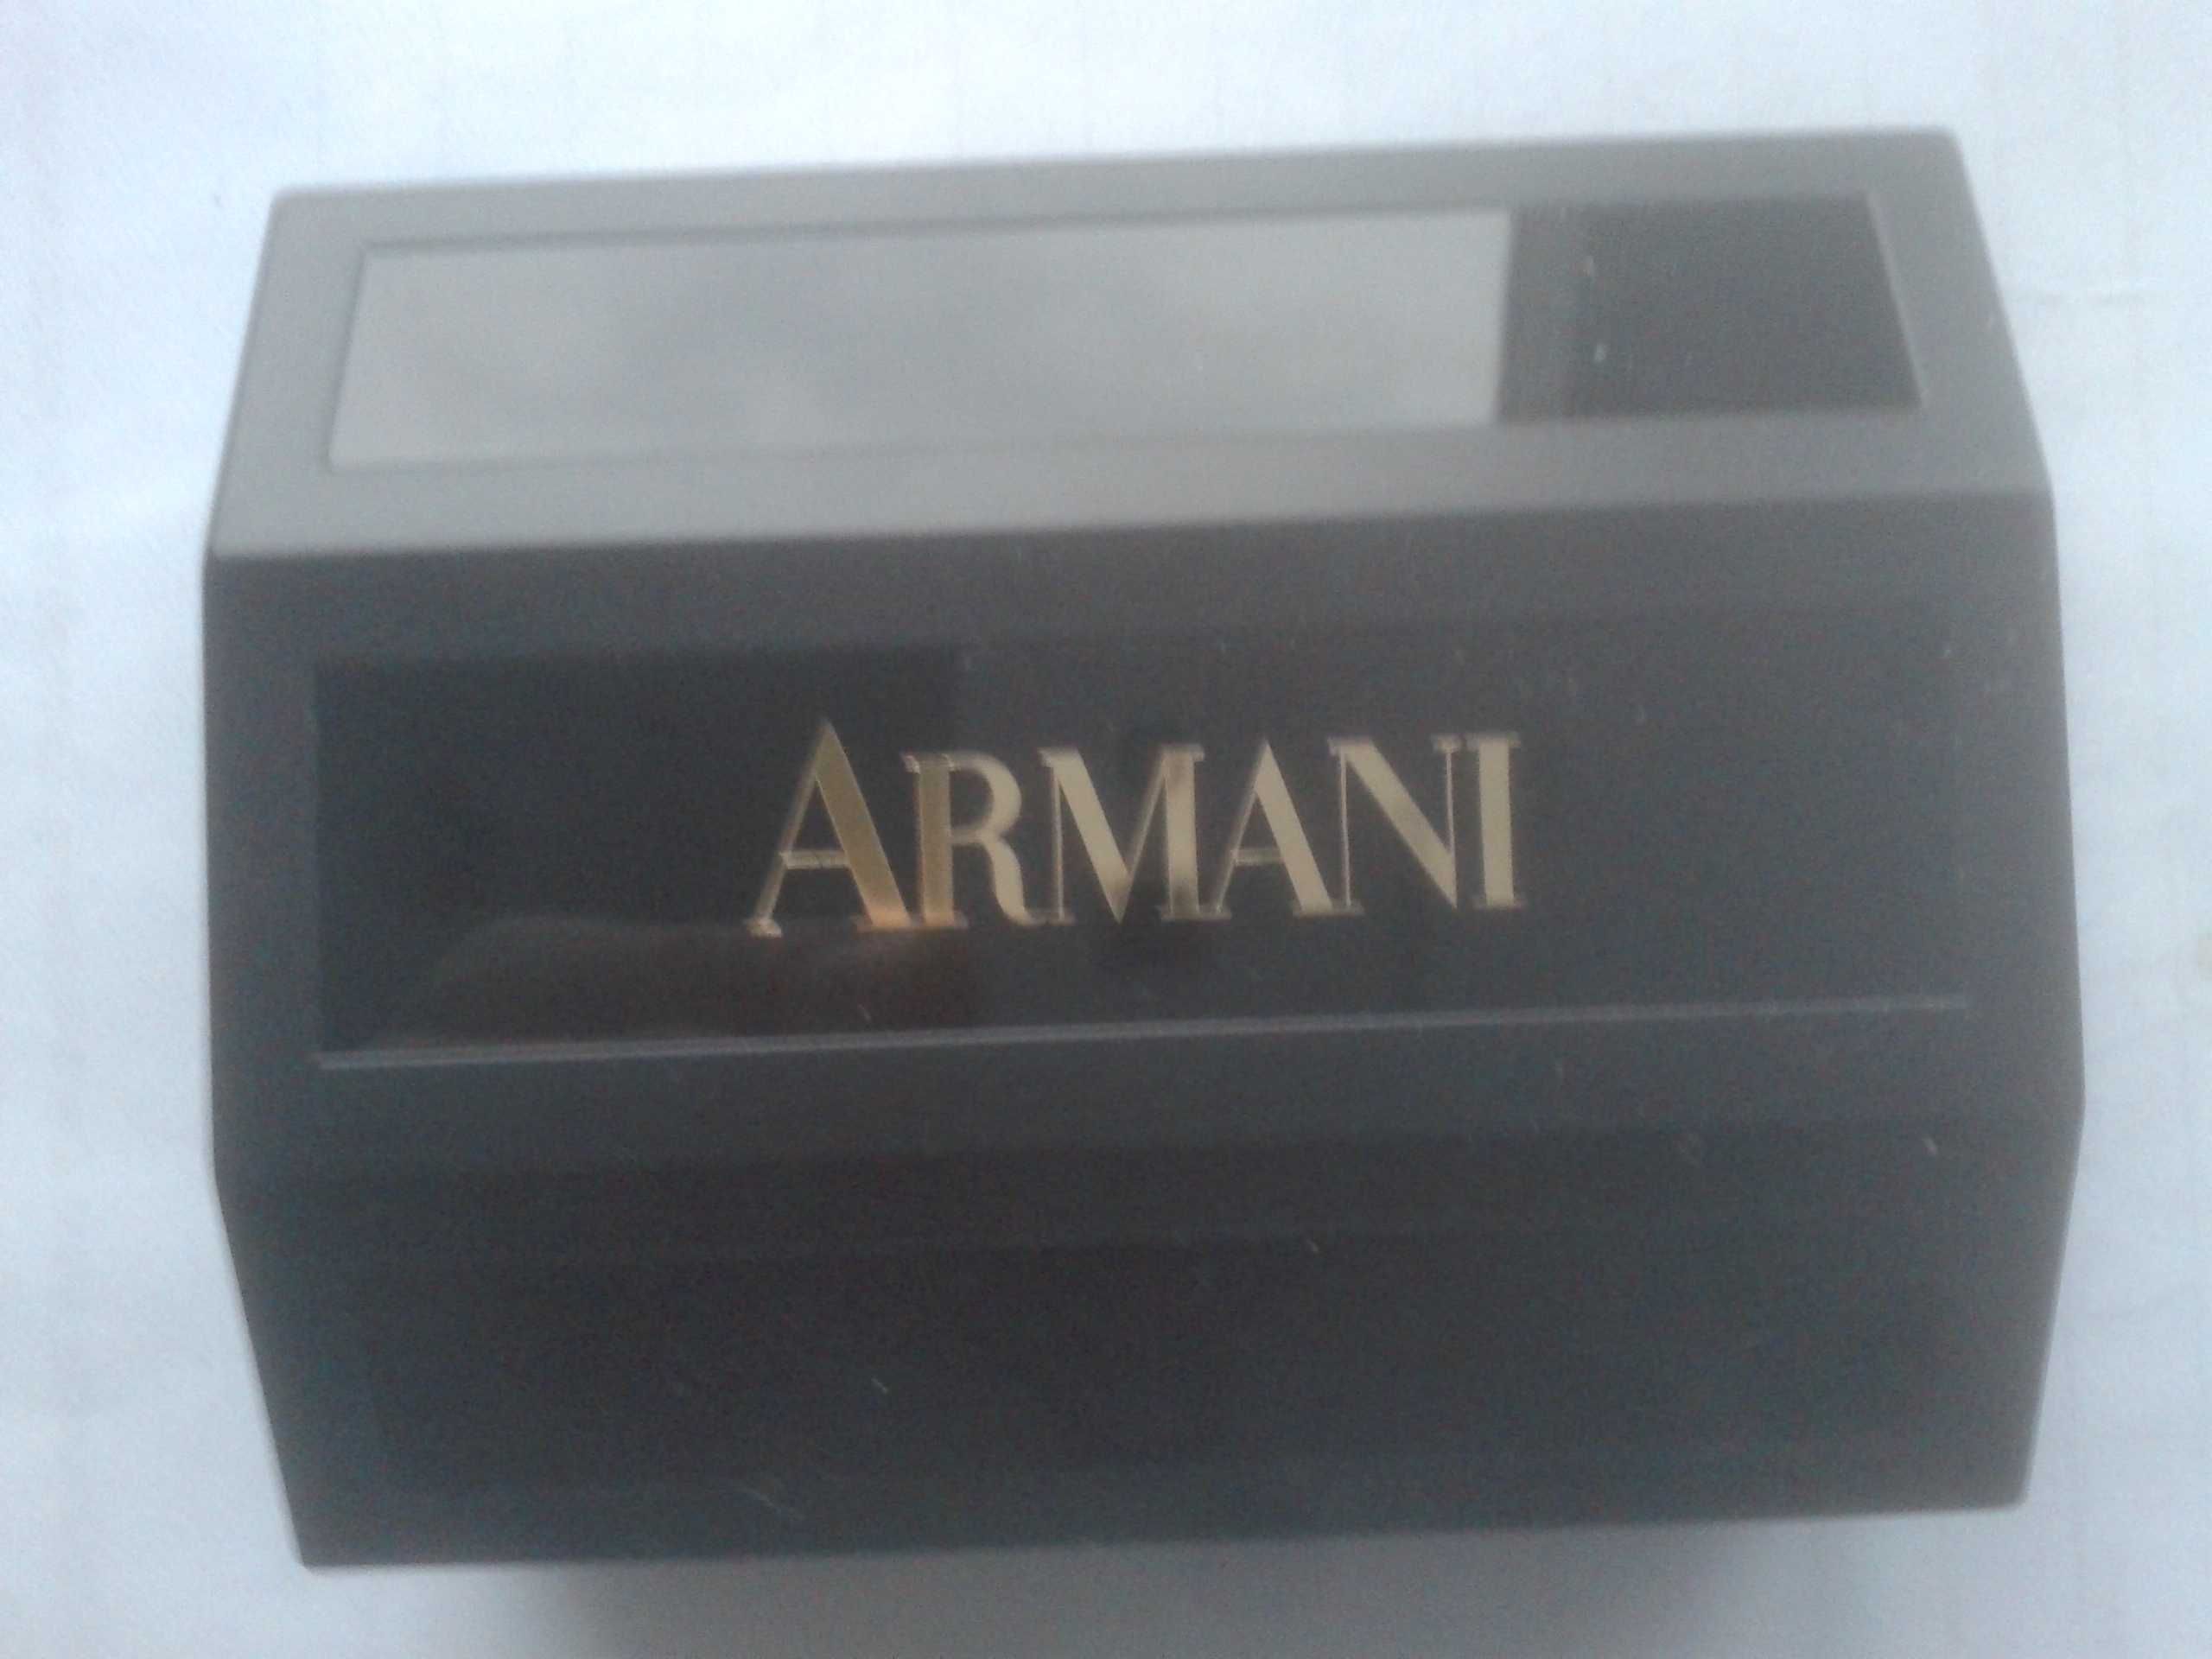 Na sprzedaż nowe, perfumowane mydło Giorgio Armani unikat-perełka